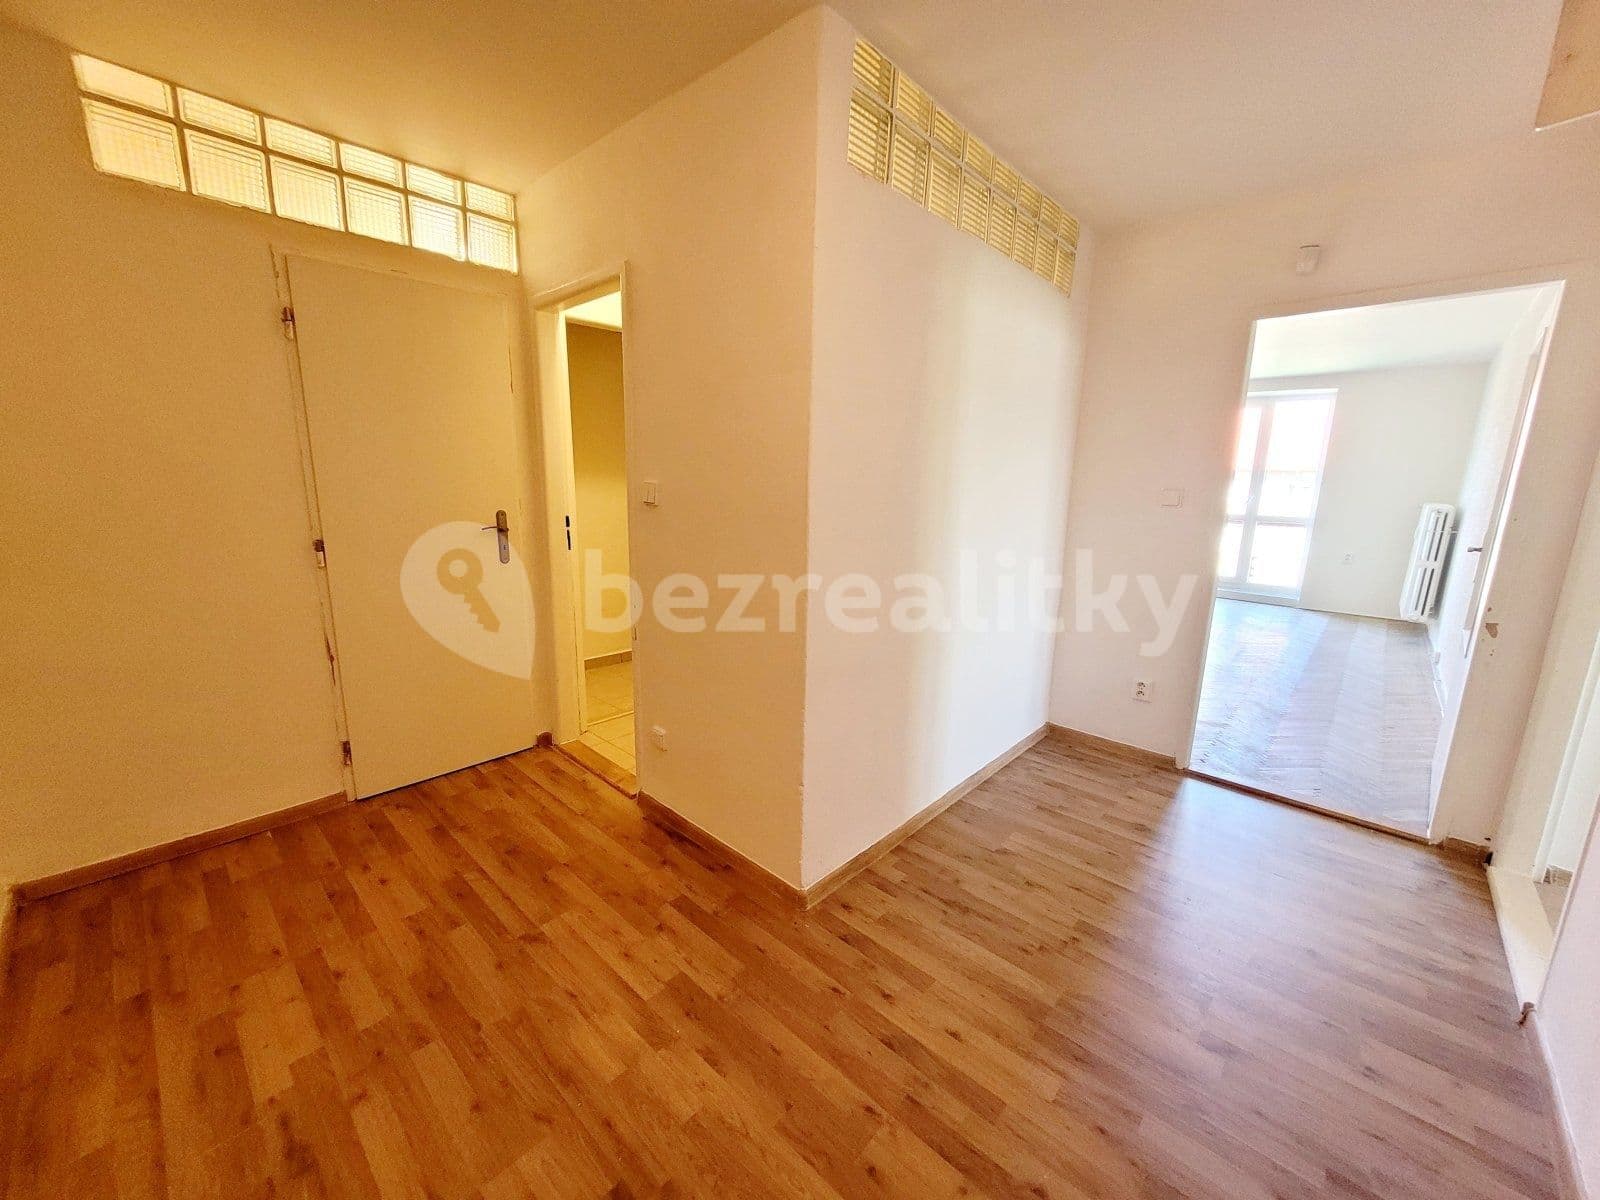 2 bedroom flat to rent, 64 m², Odboje, Havířov, Moravskoslezský Region